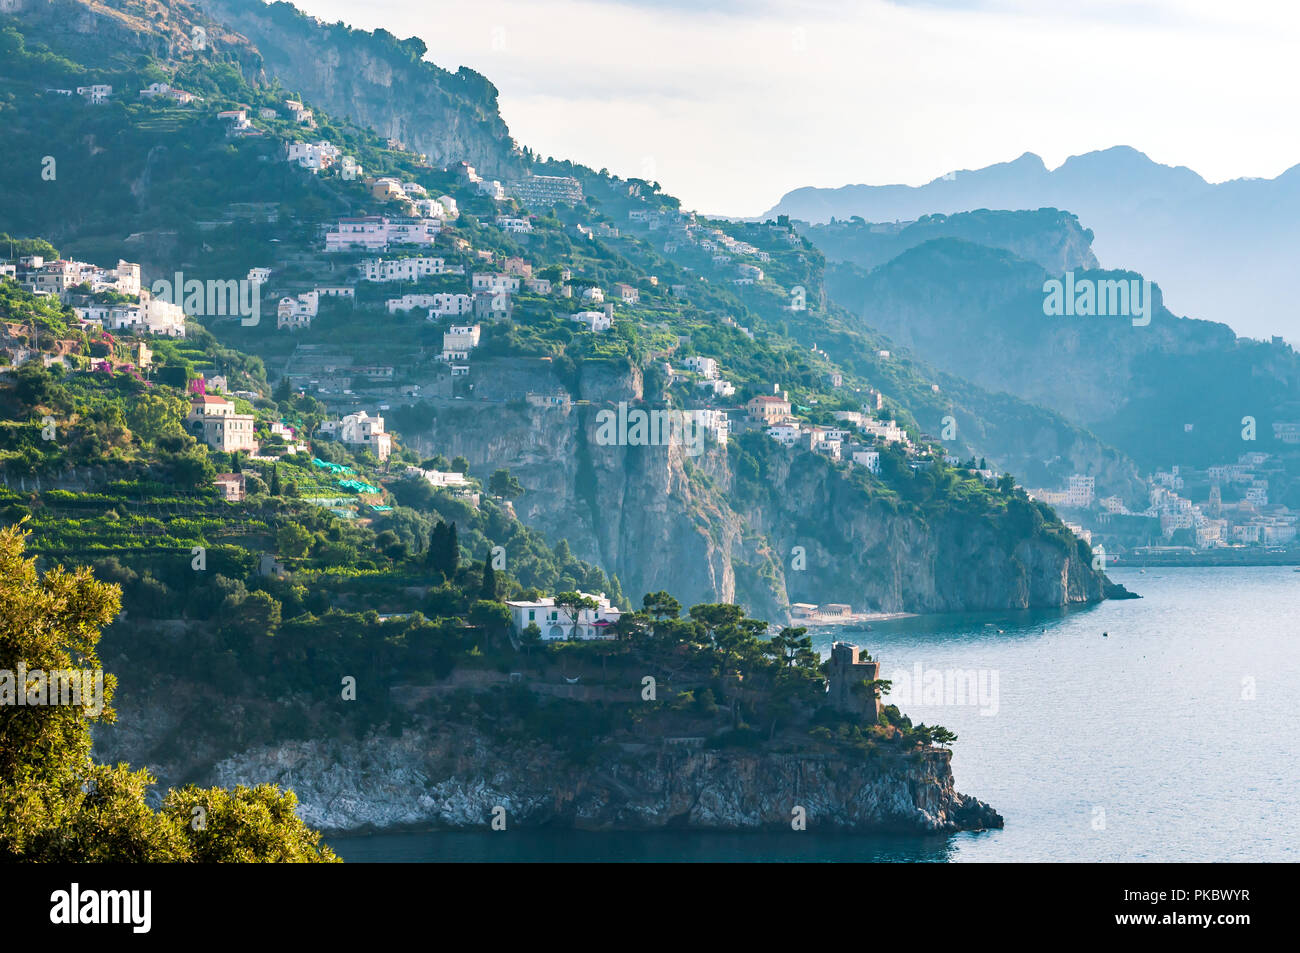 La Costiera Amalfitana con promontori rocciosi al mare Mediterraneo, Italia Foto Stock